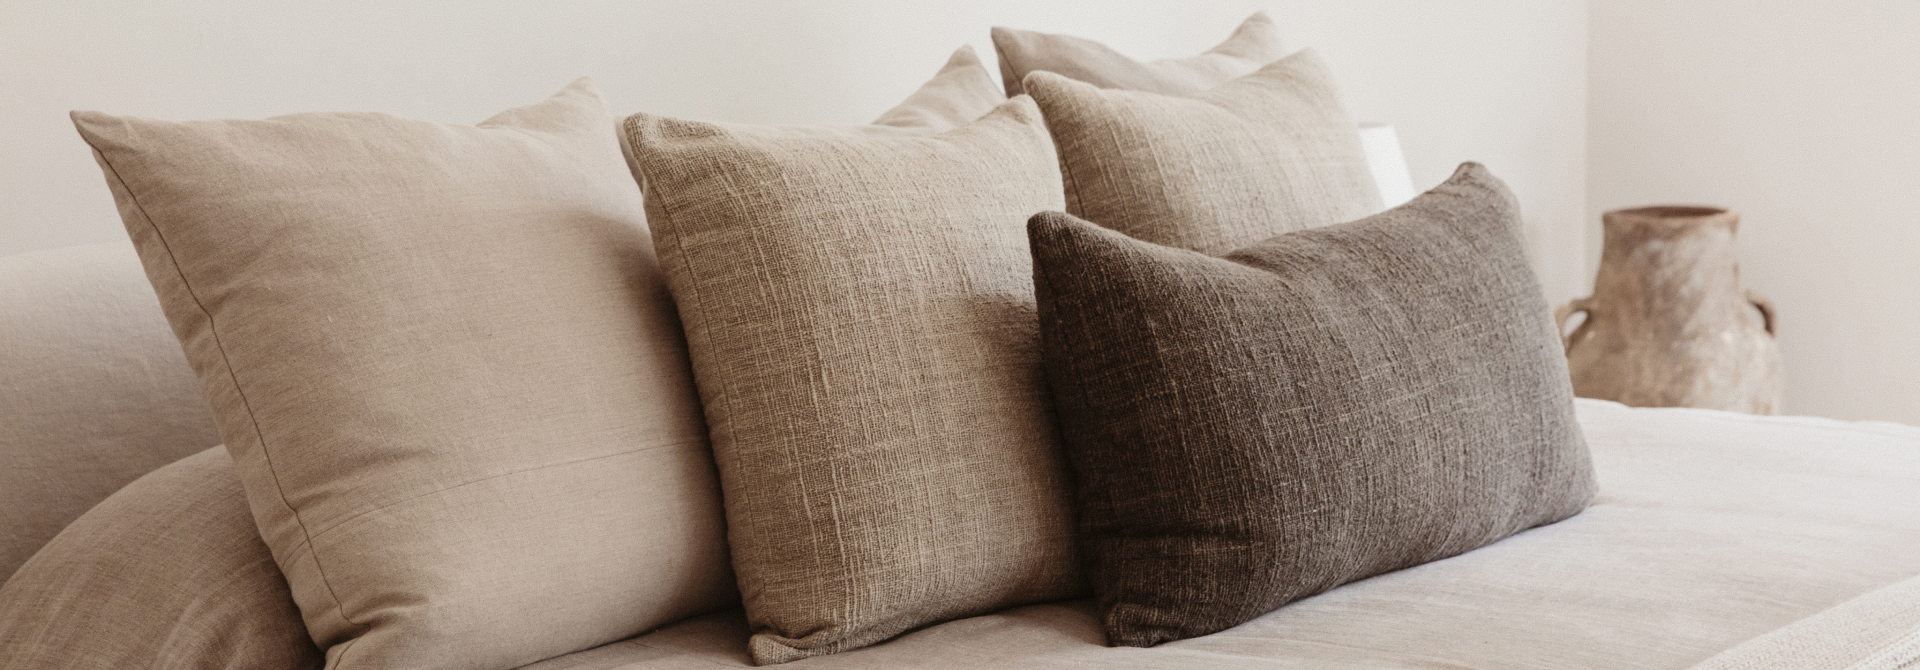 Linen Lumbar Pillow – Jenni Kayne